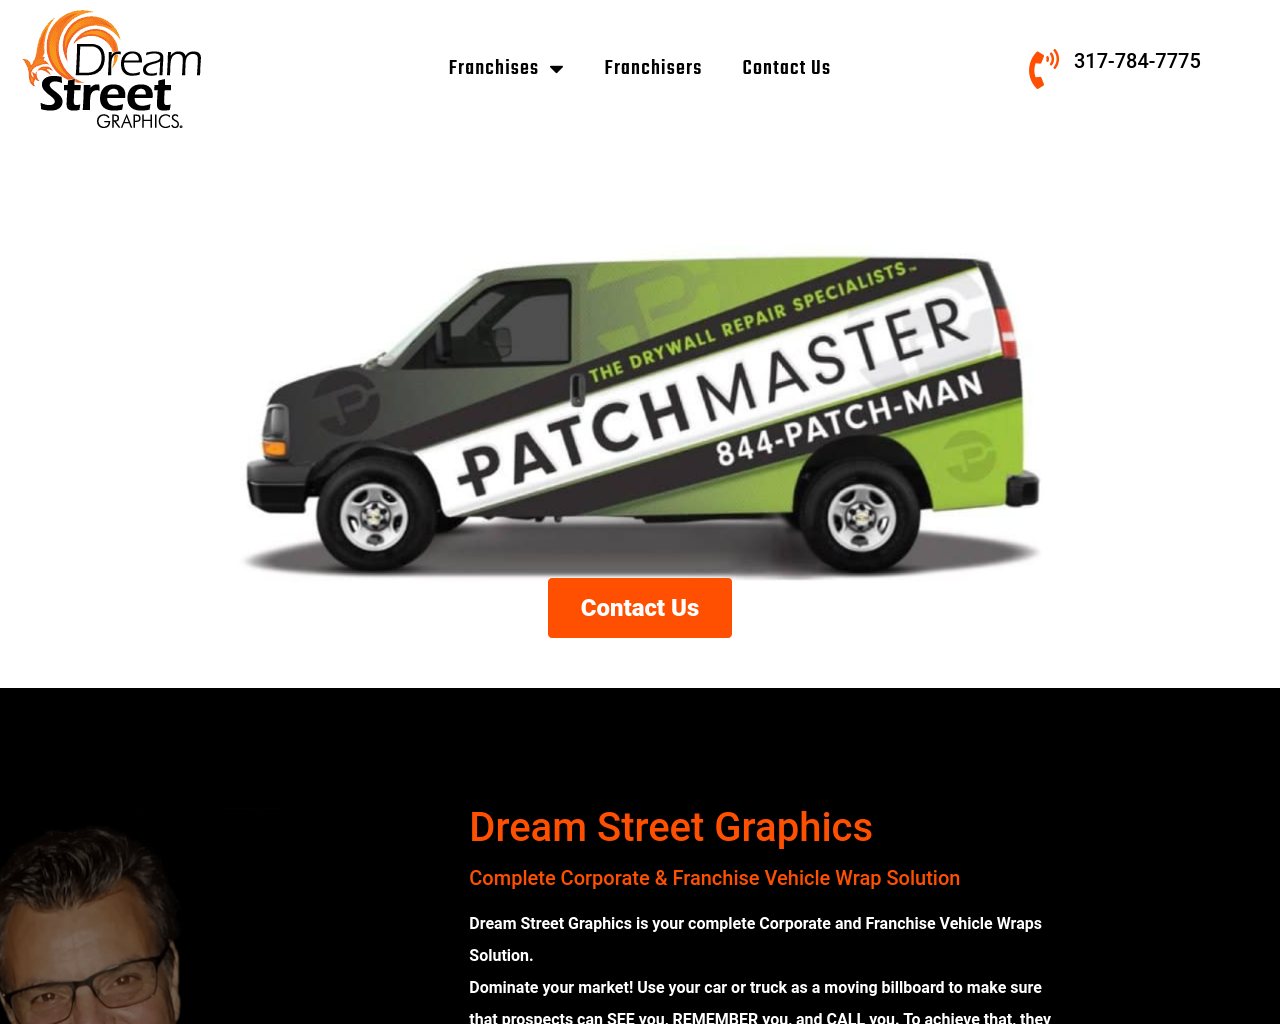 dreamstreetgraphics.com